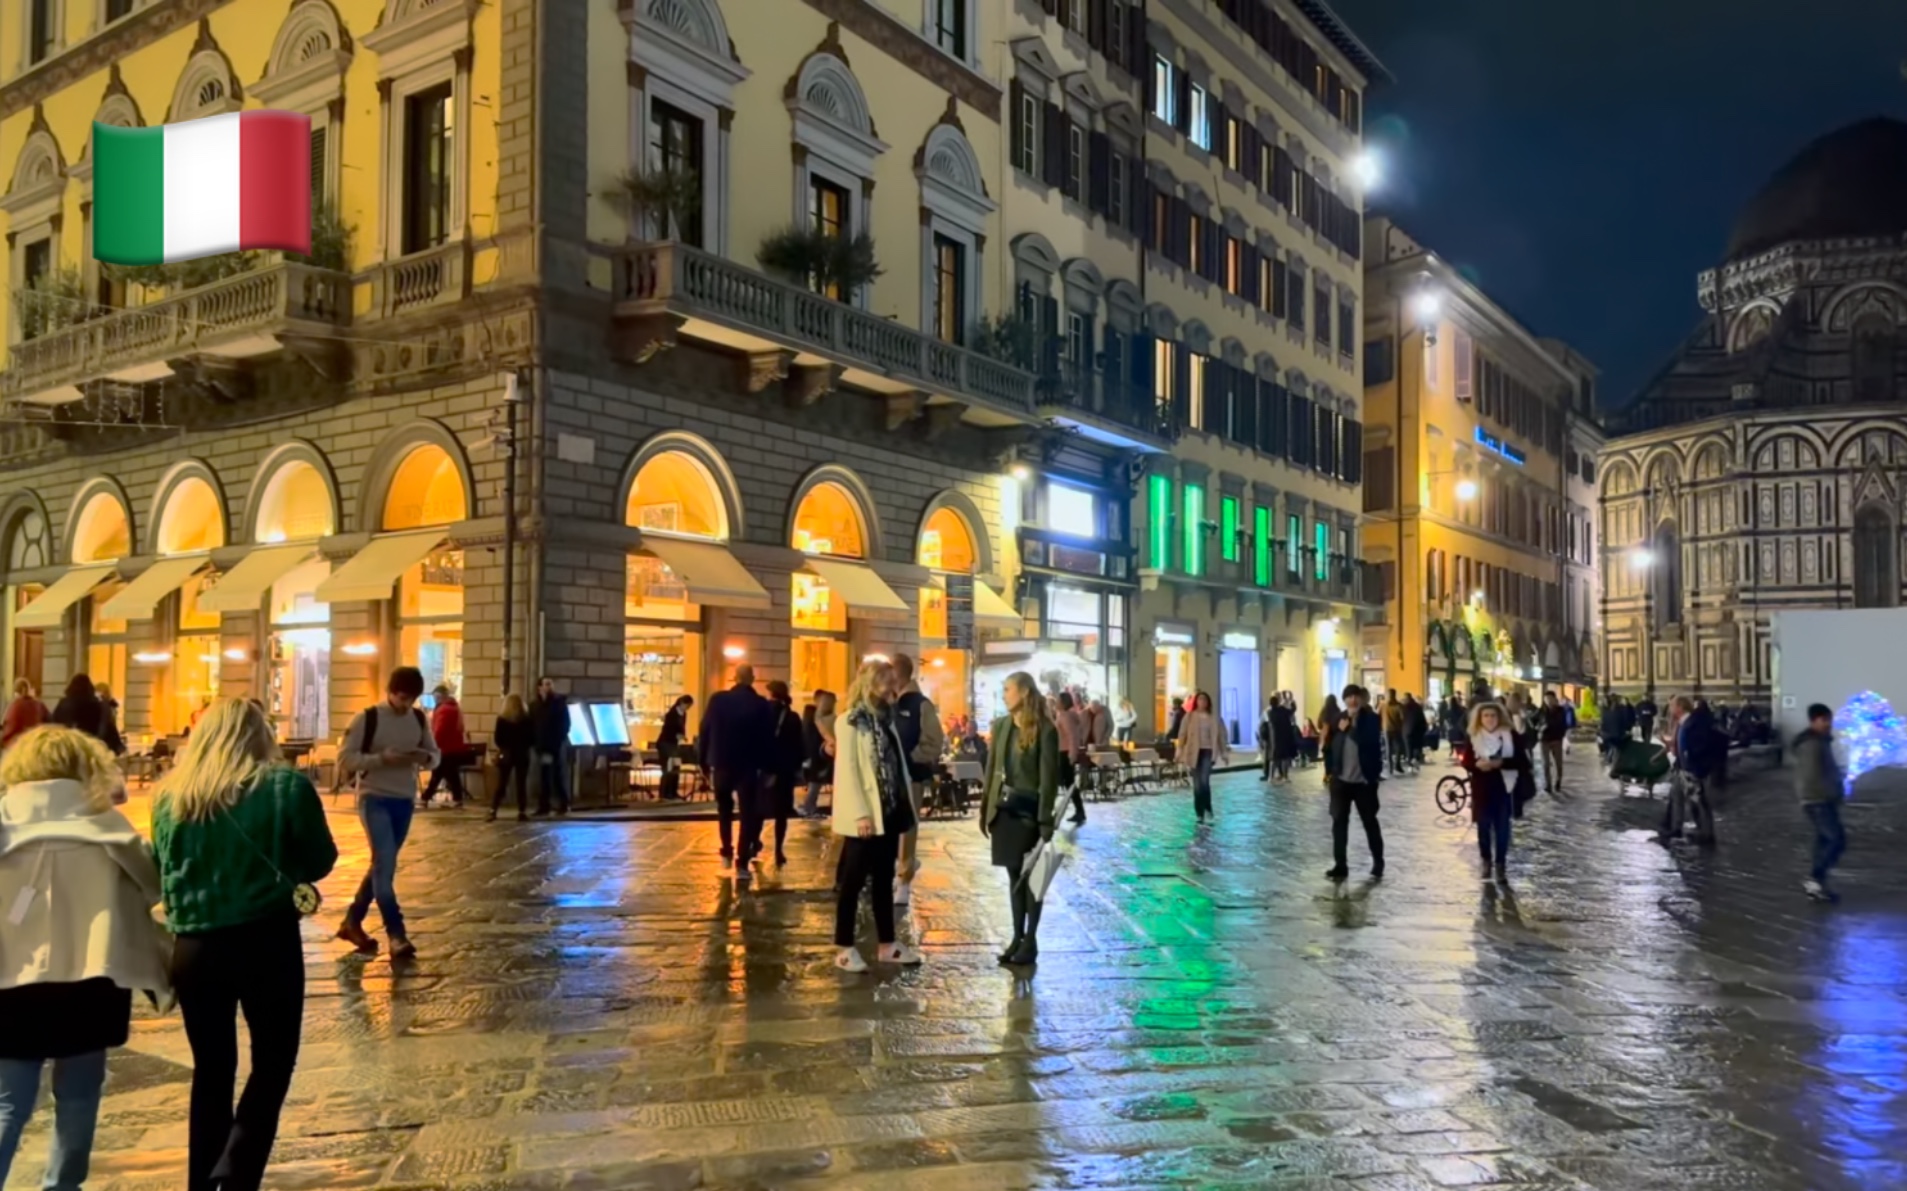 意大利风情街 夜景图片